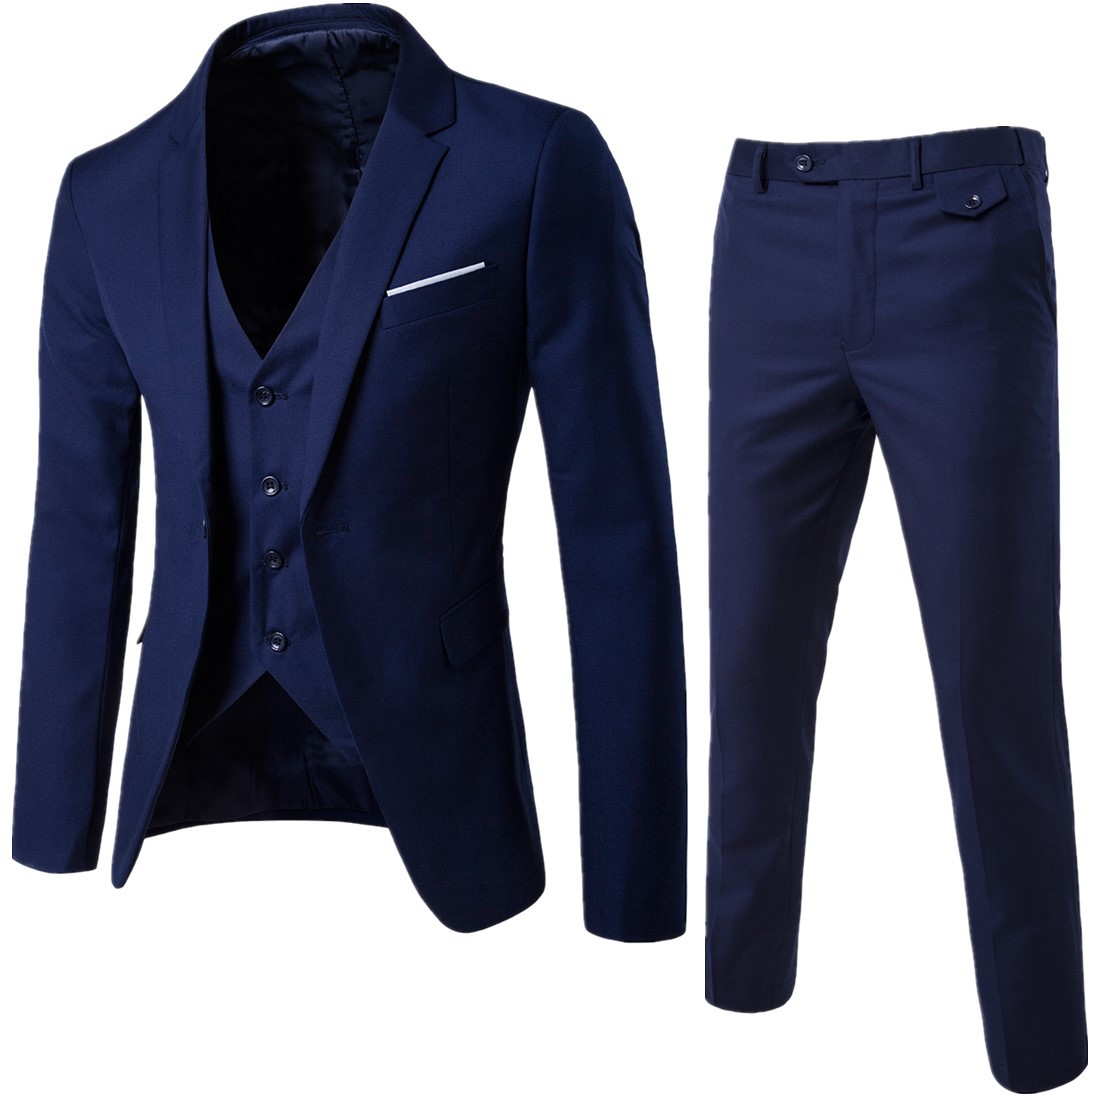 Spring 2019 fashion gentleman comfortable slim suit 3-piece men's professional suit formal men's suit